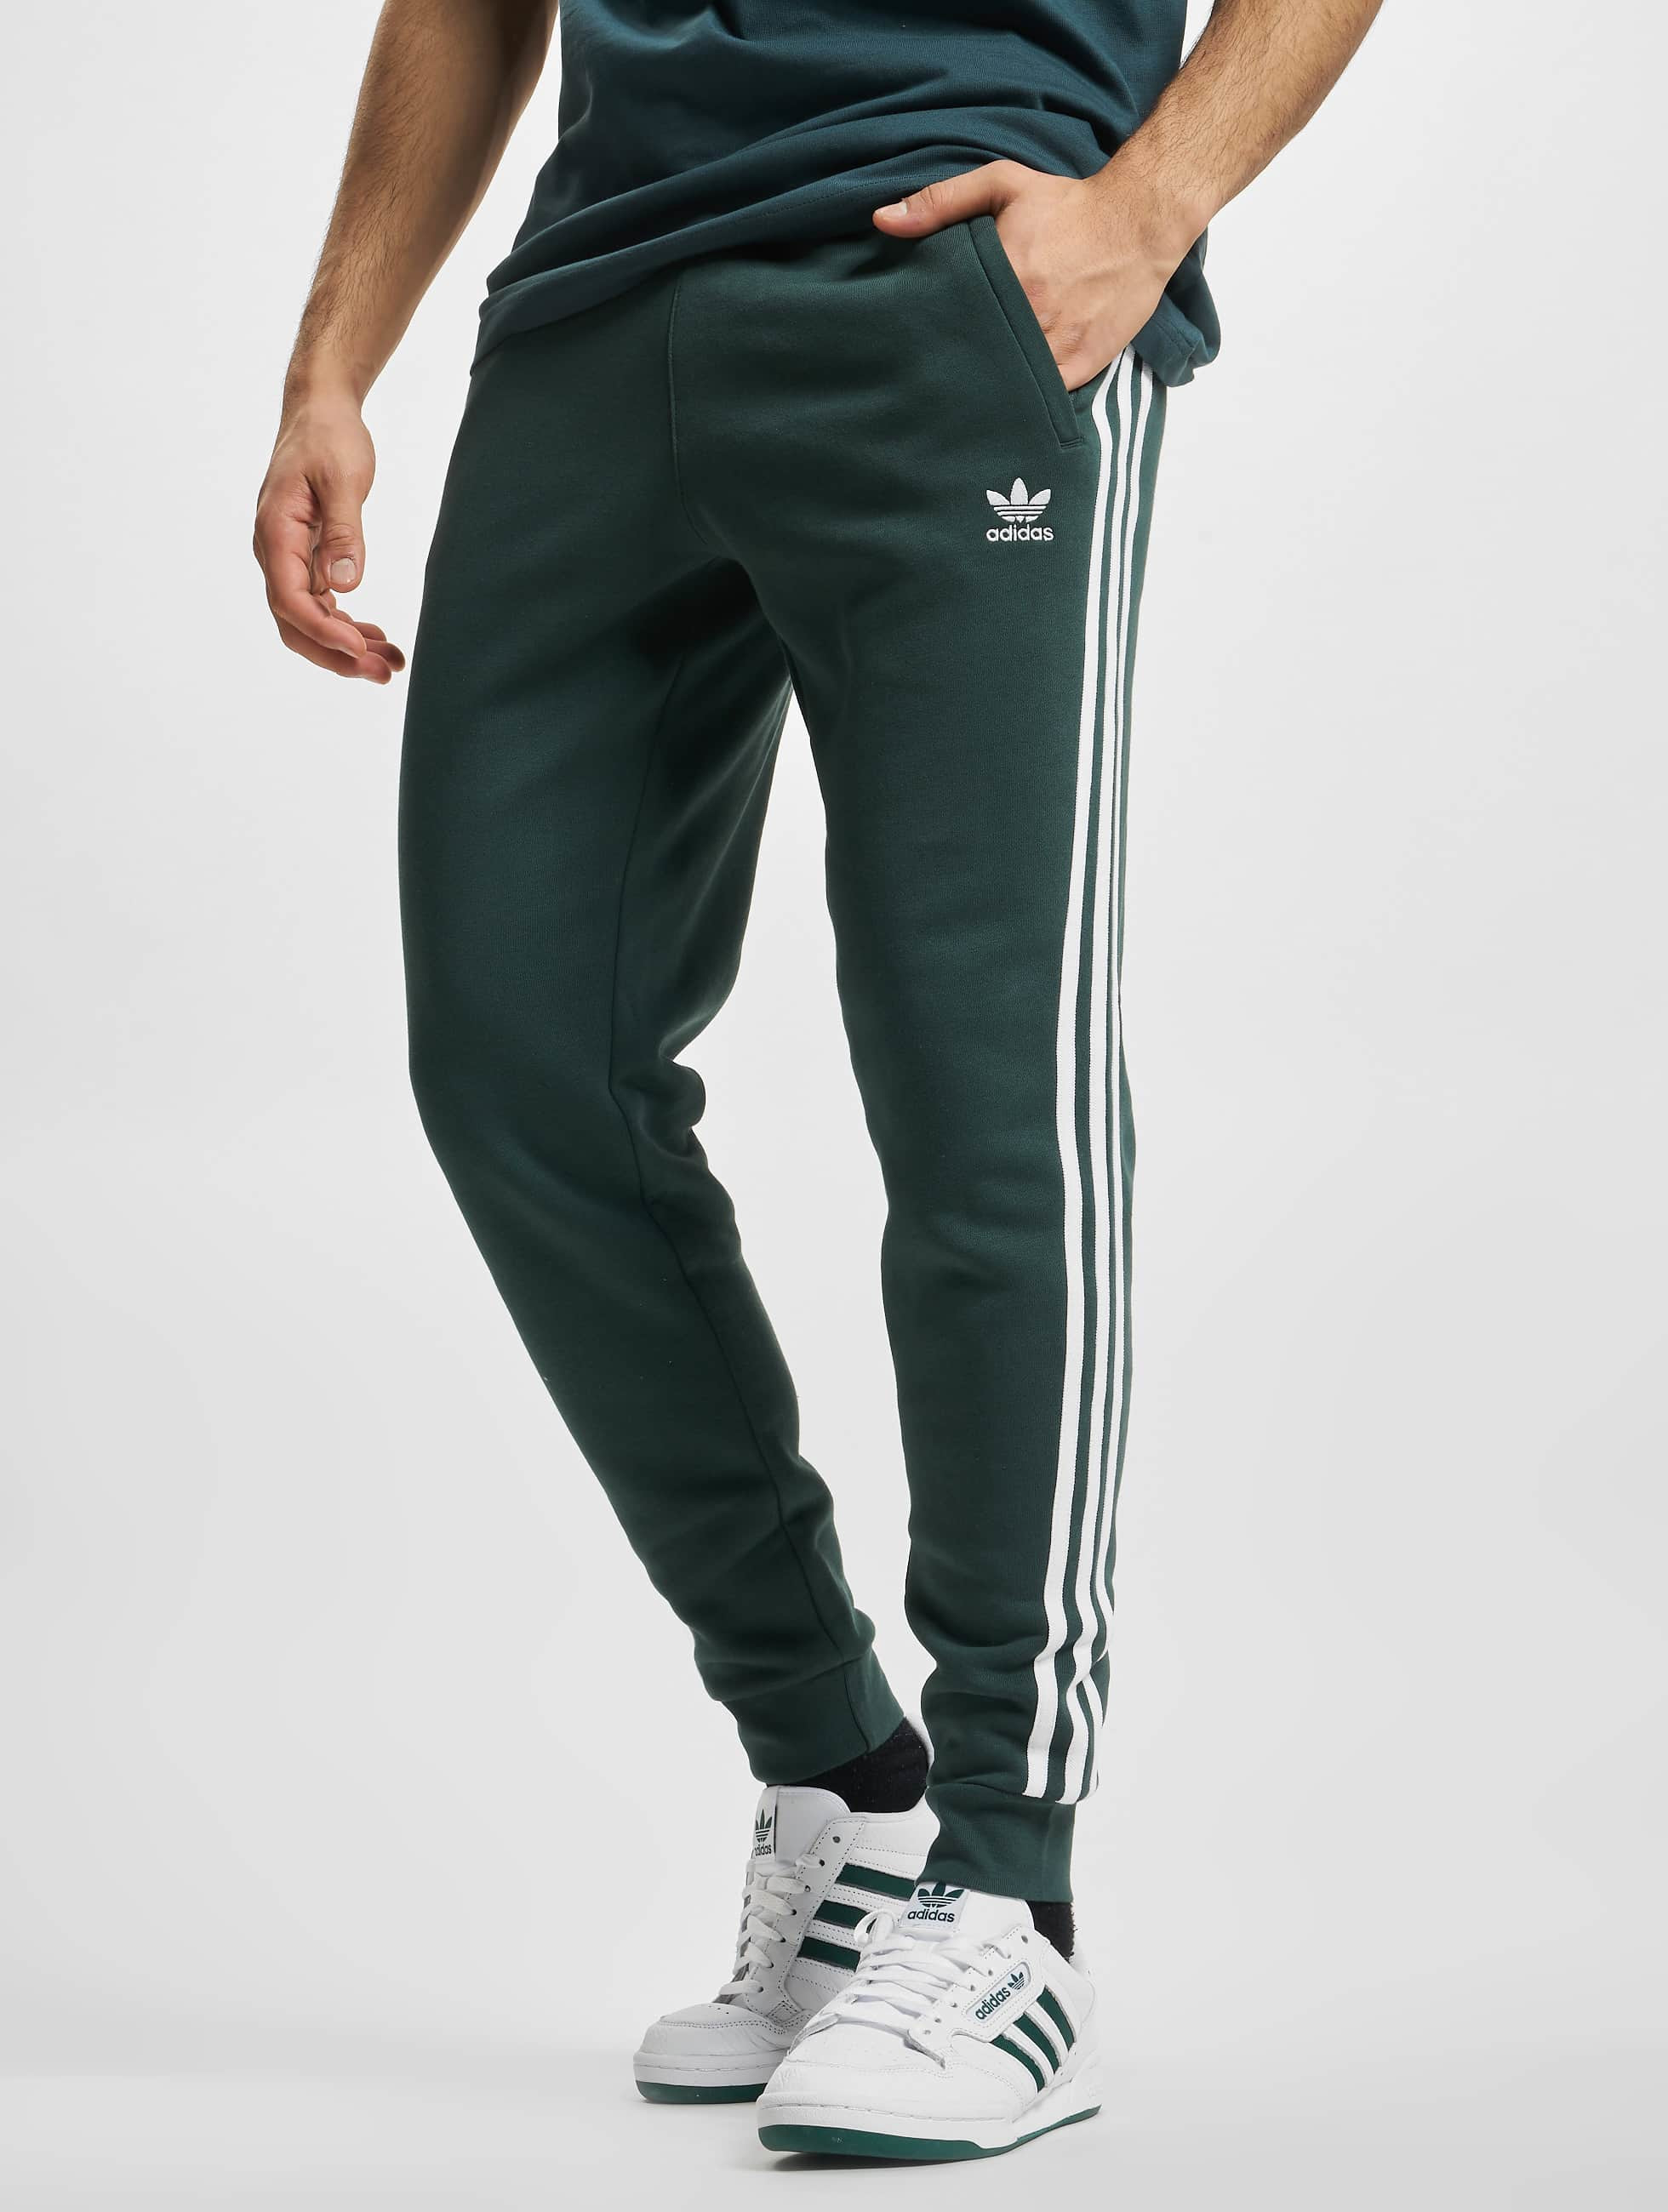 Vijftig nakoming uit adidas Originals broek / joggingbroek Originals 3-Stripes in groen 929615